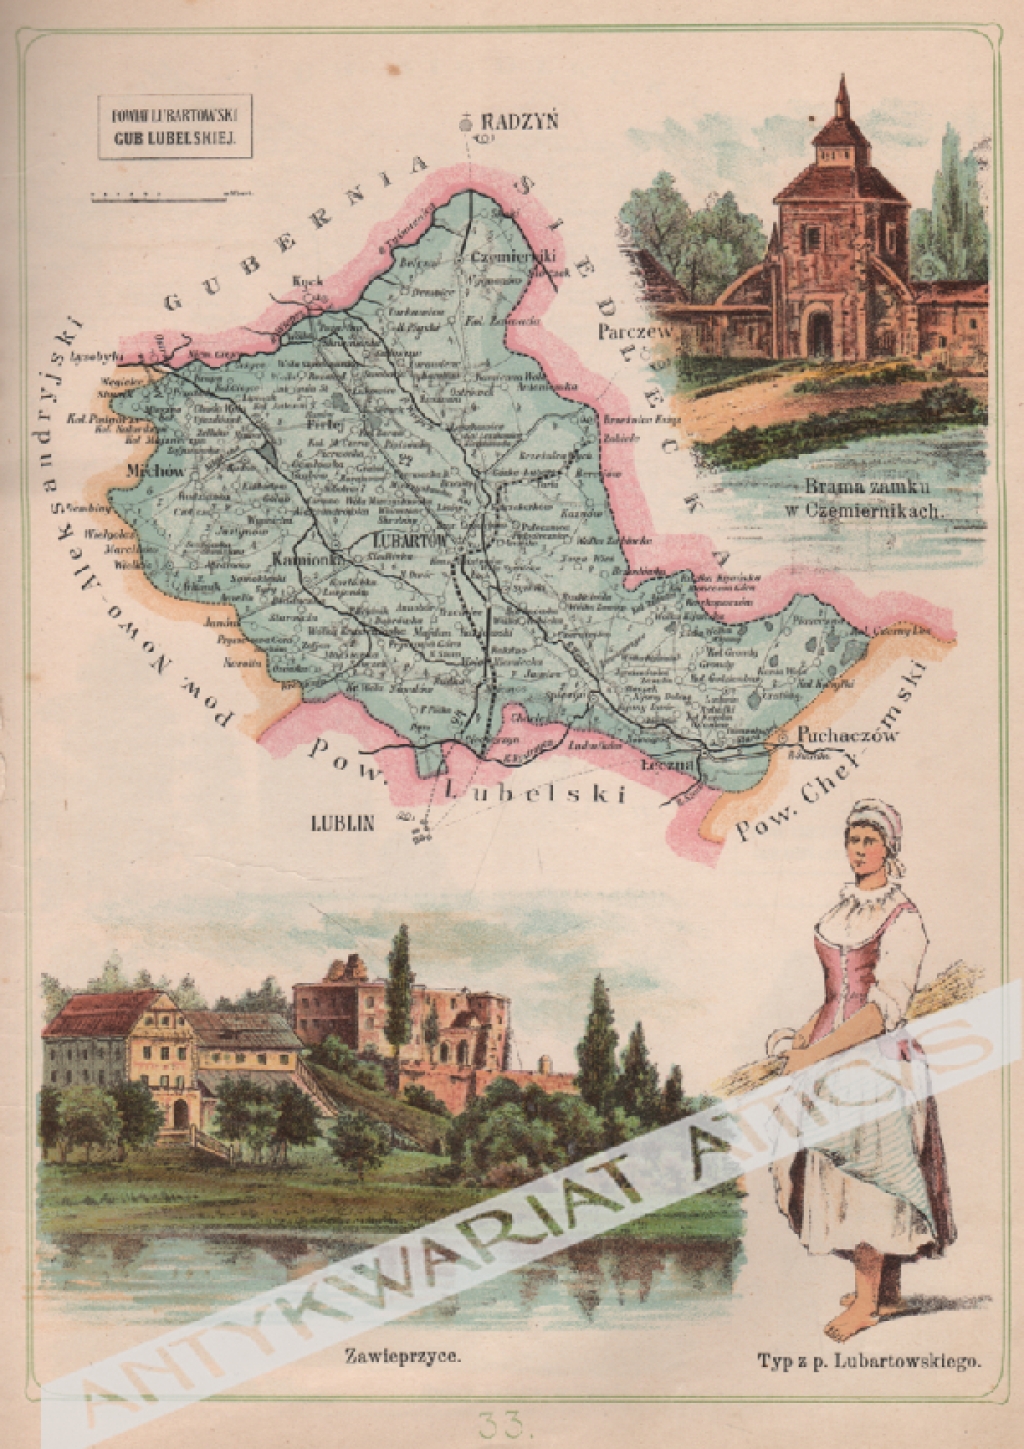 [mapa, 1907] Powiat Lubartowski Gub. Lubelskiej